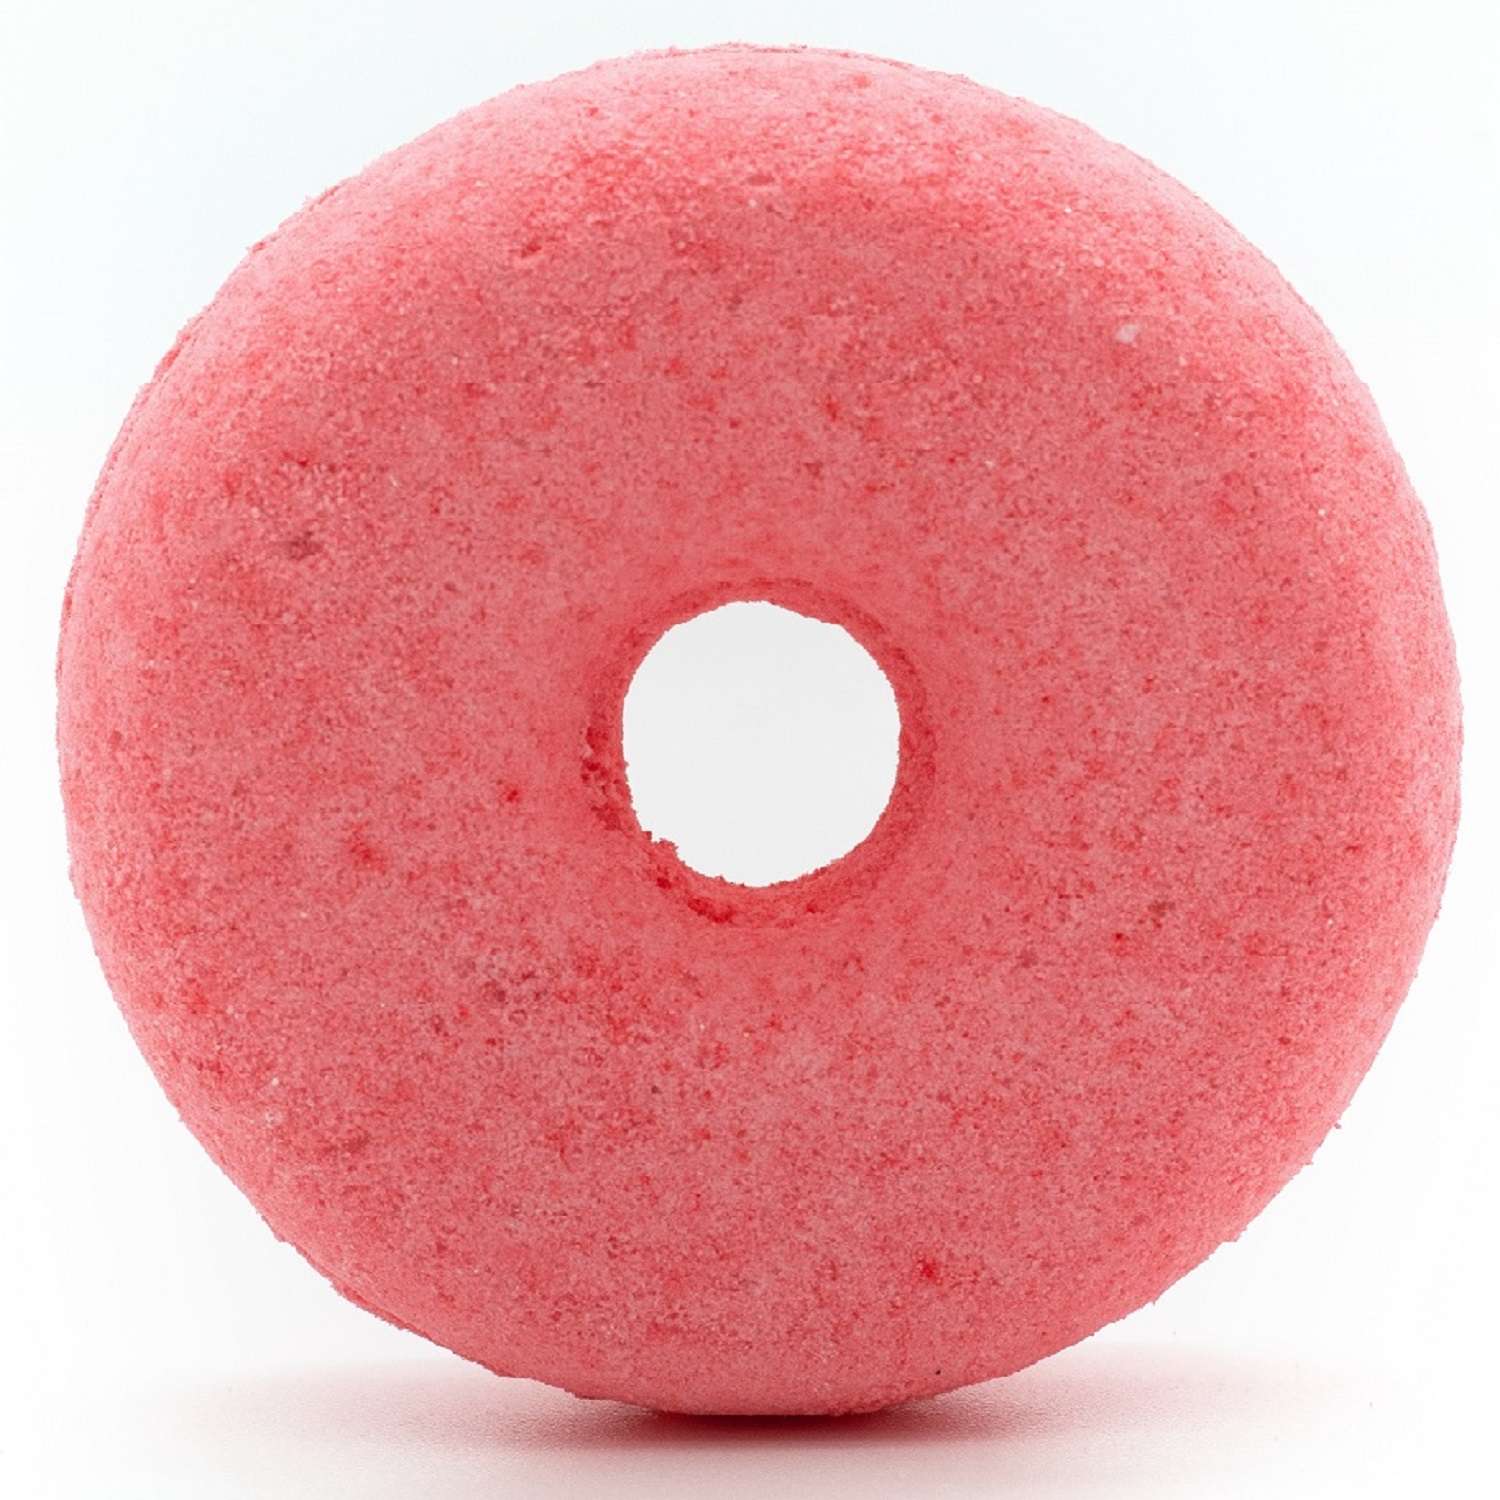 Соль для ванн Ресурс Здоровья Бурлящие пончики Яблоневый цвет и Strawberry 2шт по 120 г - фото 2